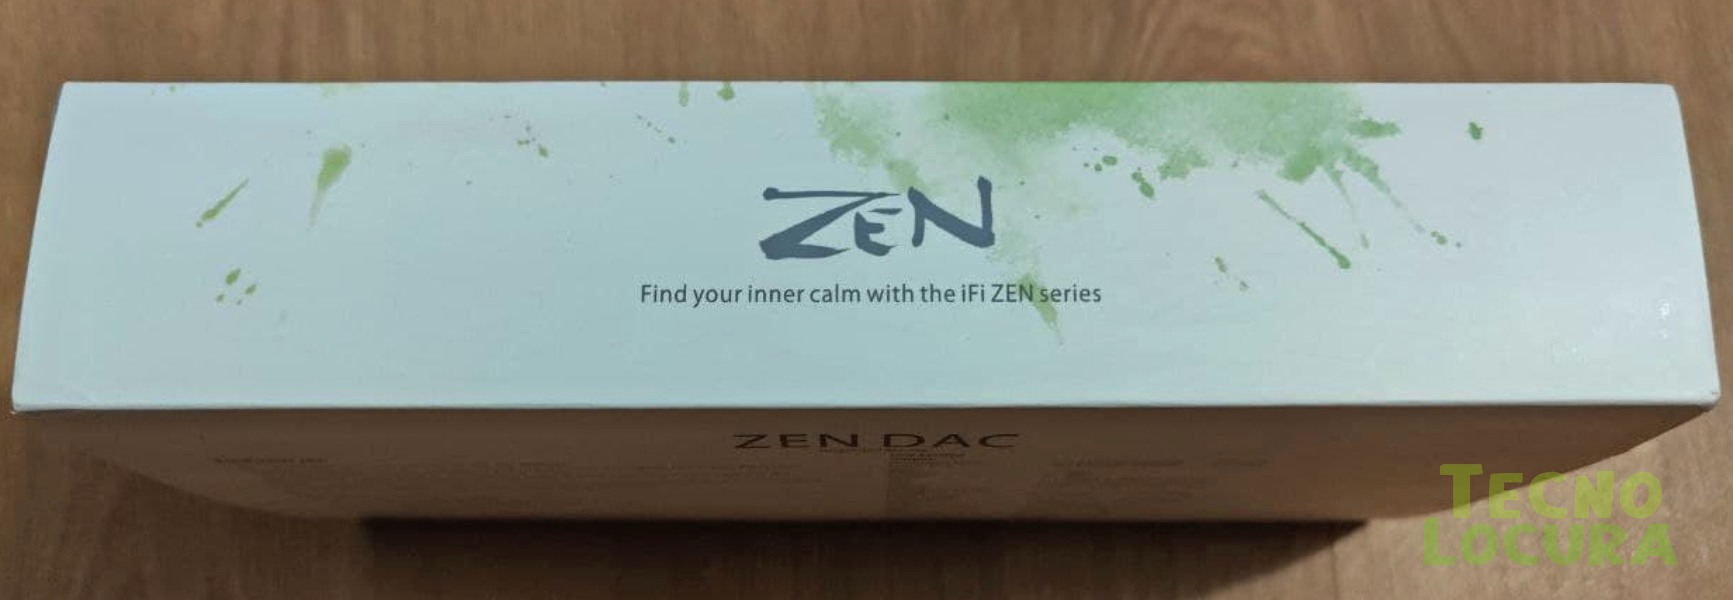 Zen DAC